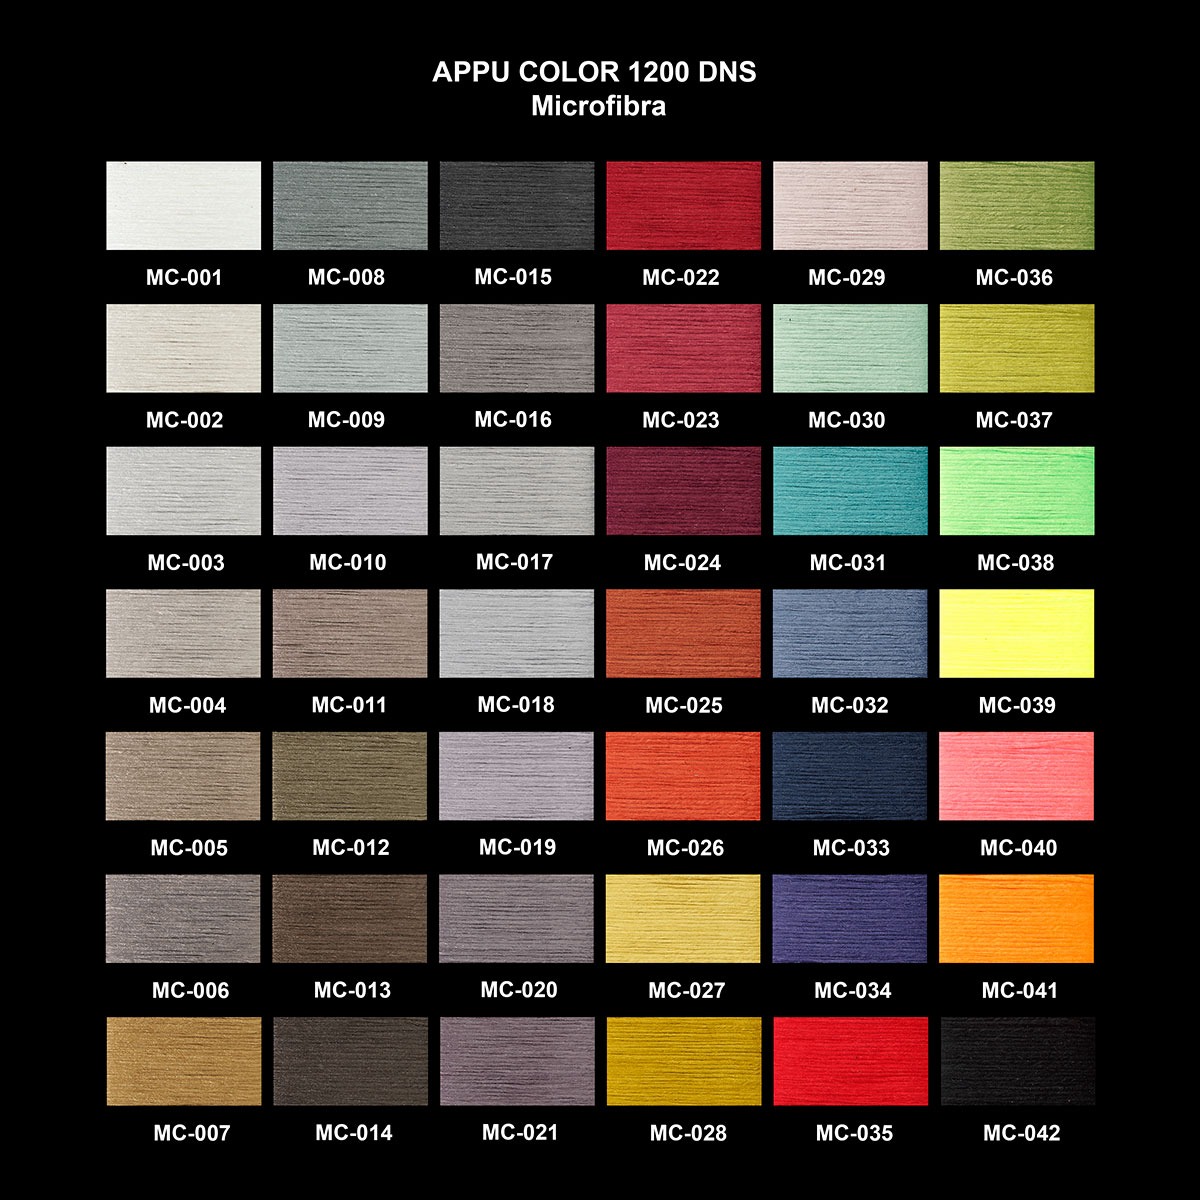 Appu color Microfibra 1200dns